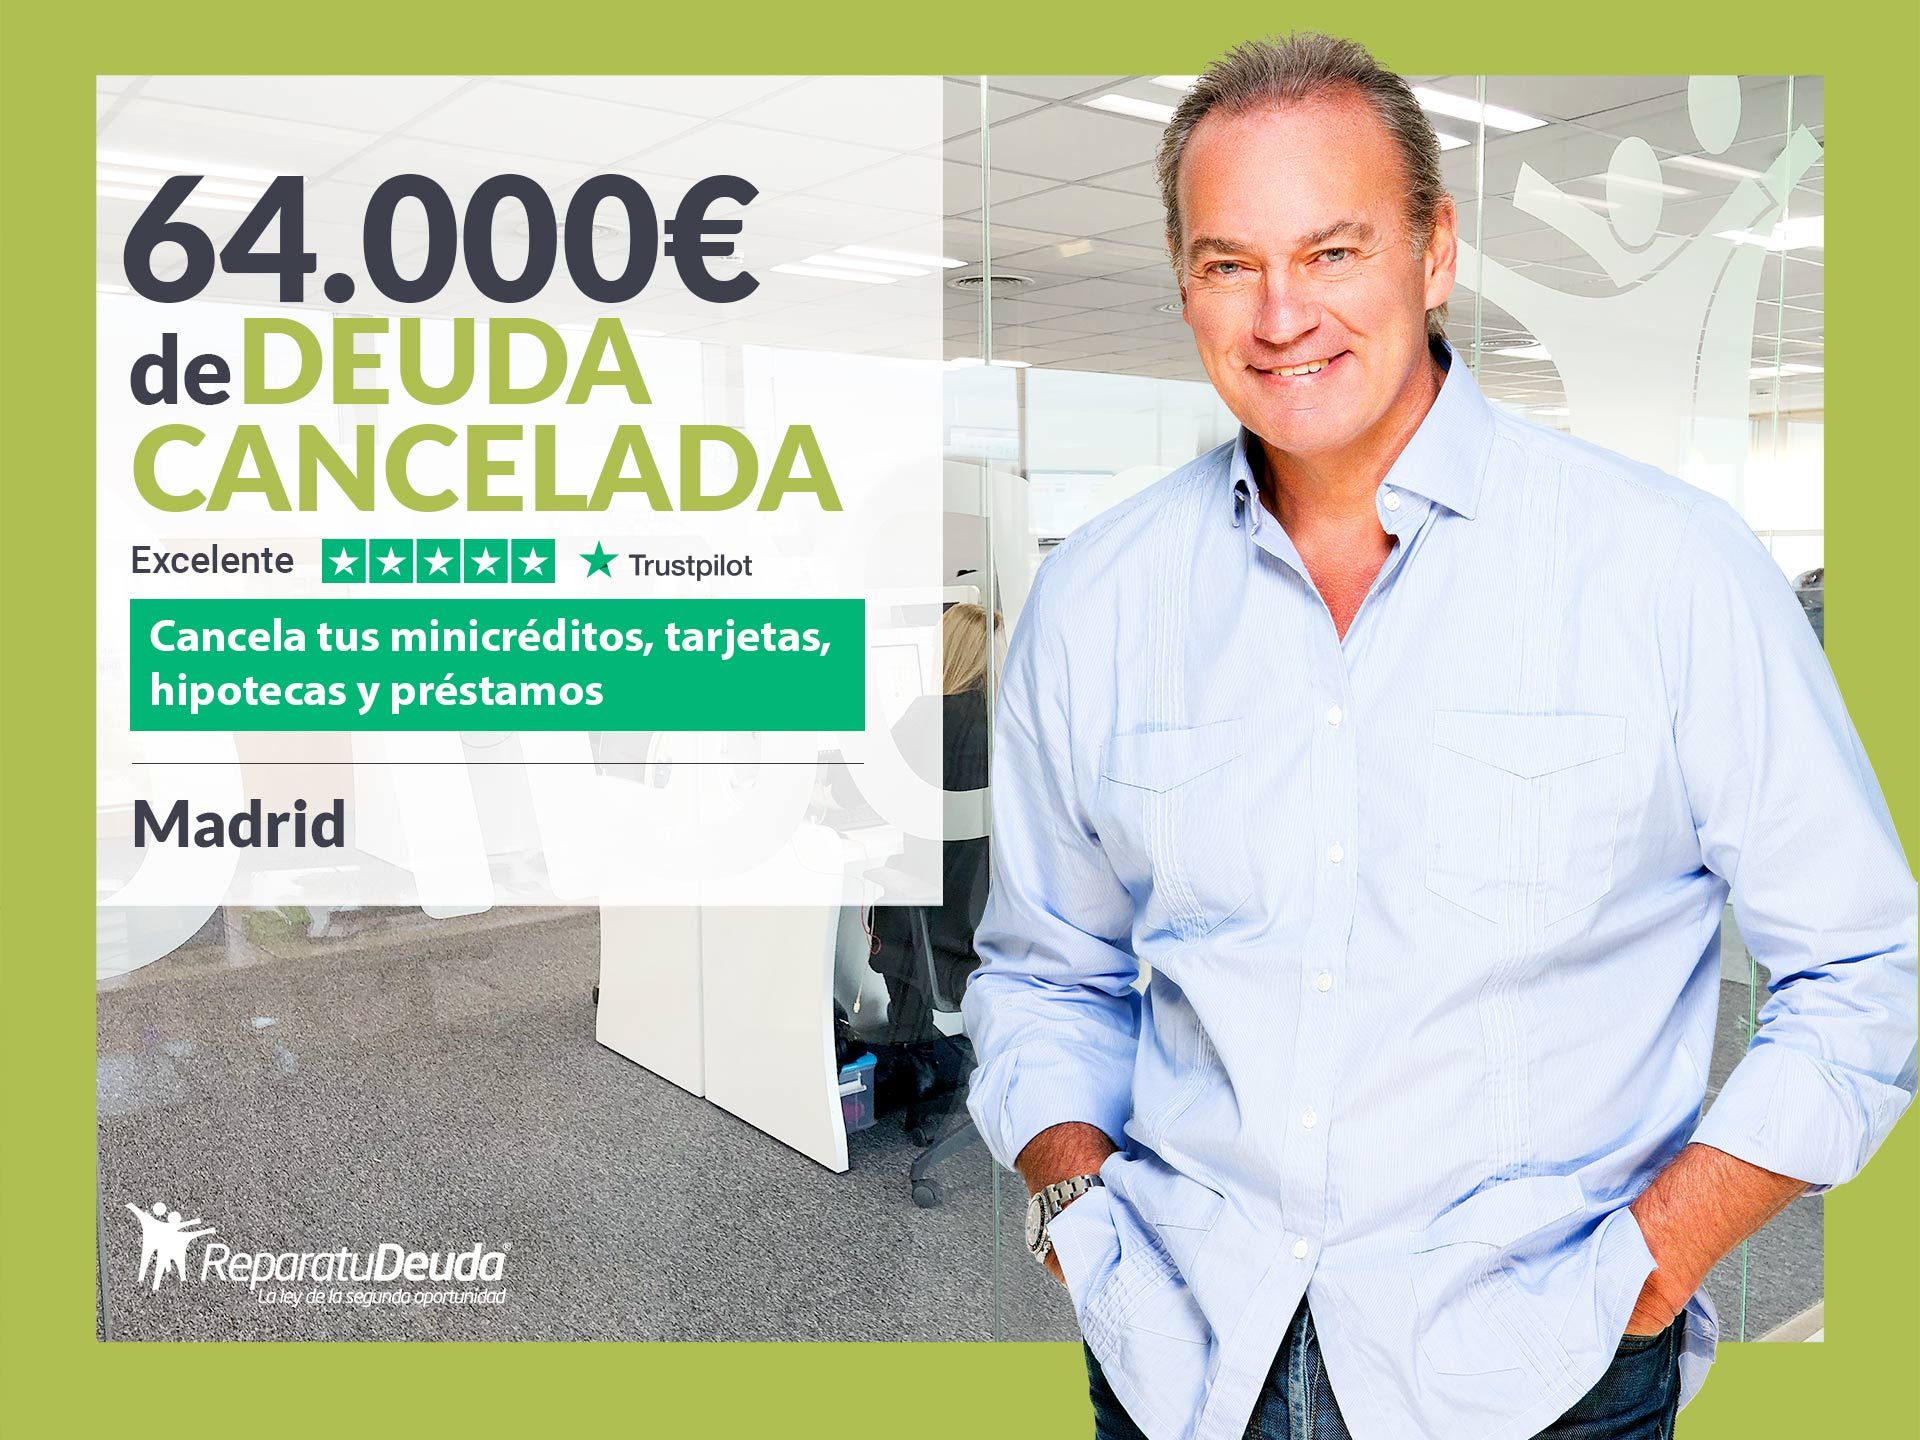 Repara tu Deuda Abogados cancela 64.000? en Madrid con la Ley de Segunda Oportunidad